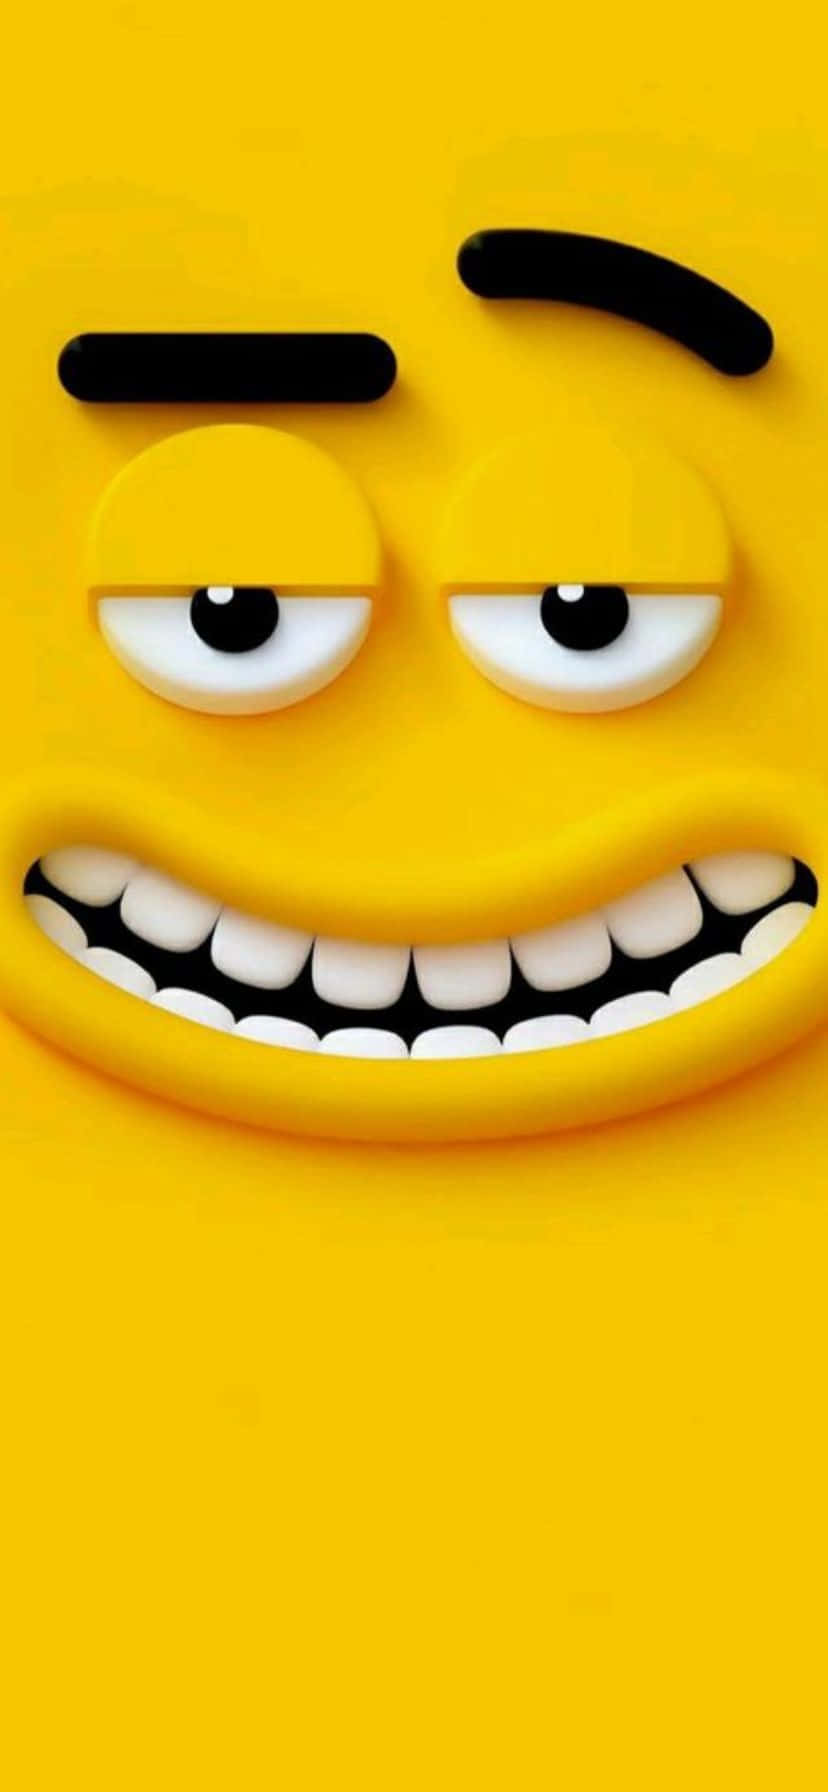 Mischievous Smiling Emoji Wallpaper